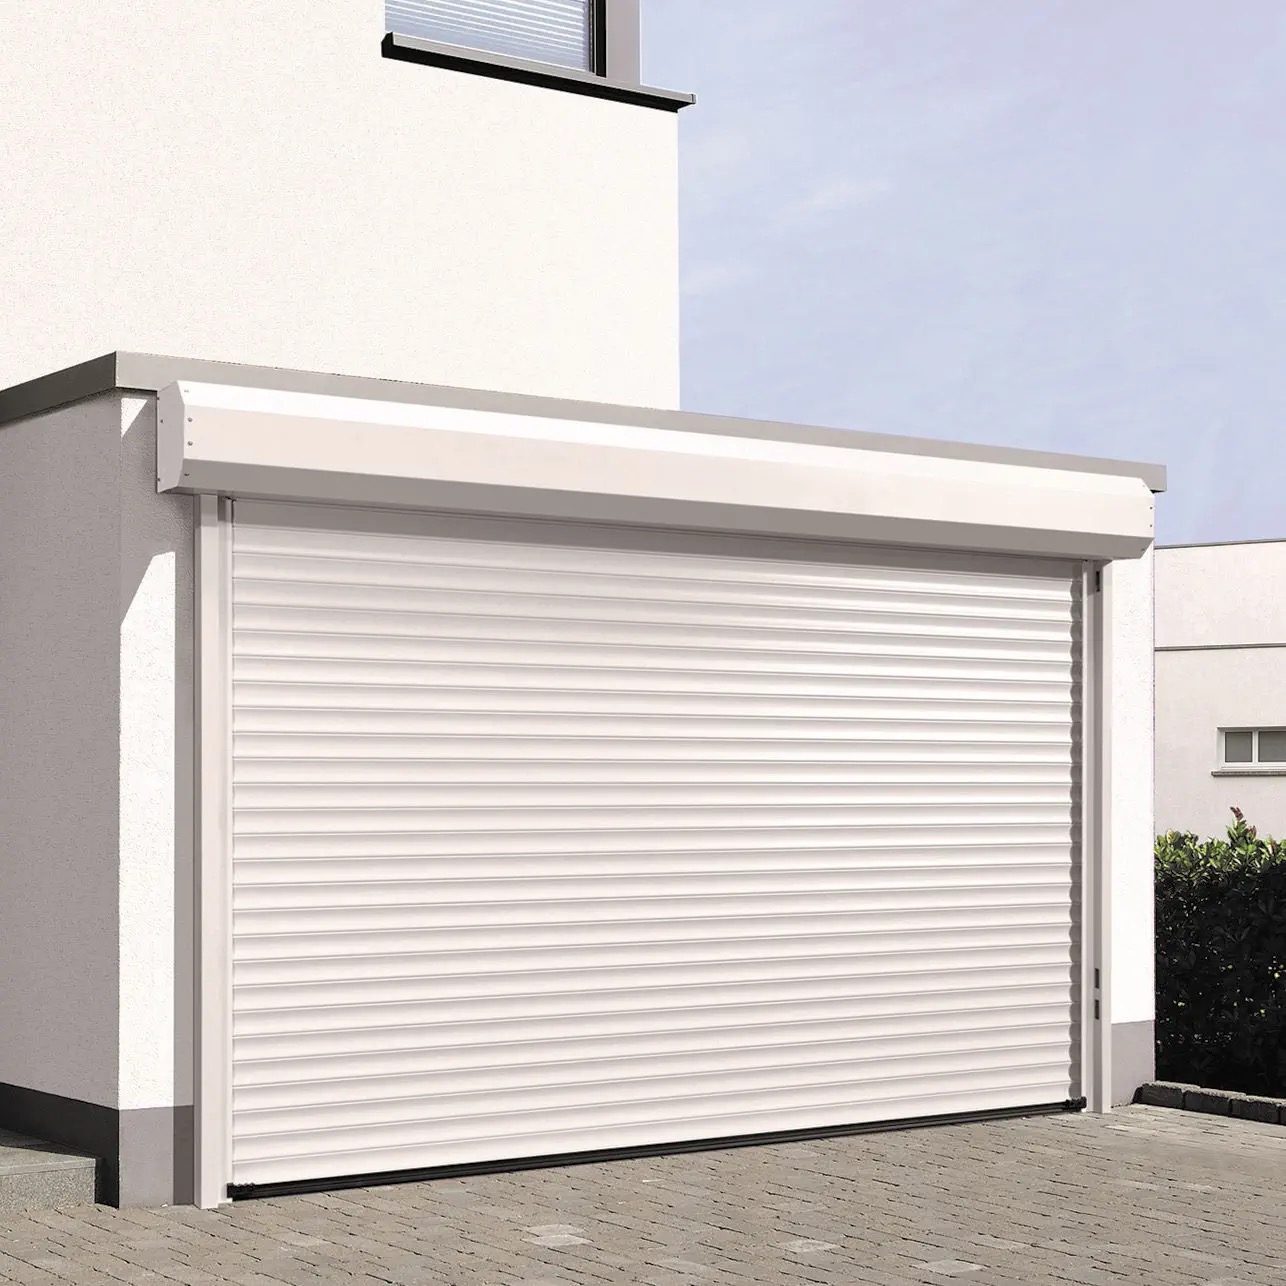 Puertas Enrollables para residencial, garajes, parking o locales